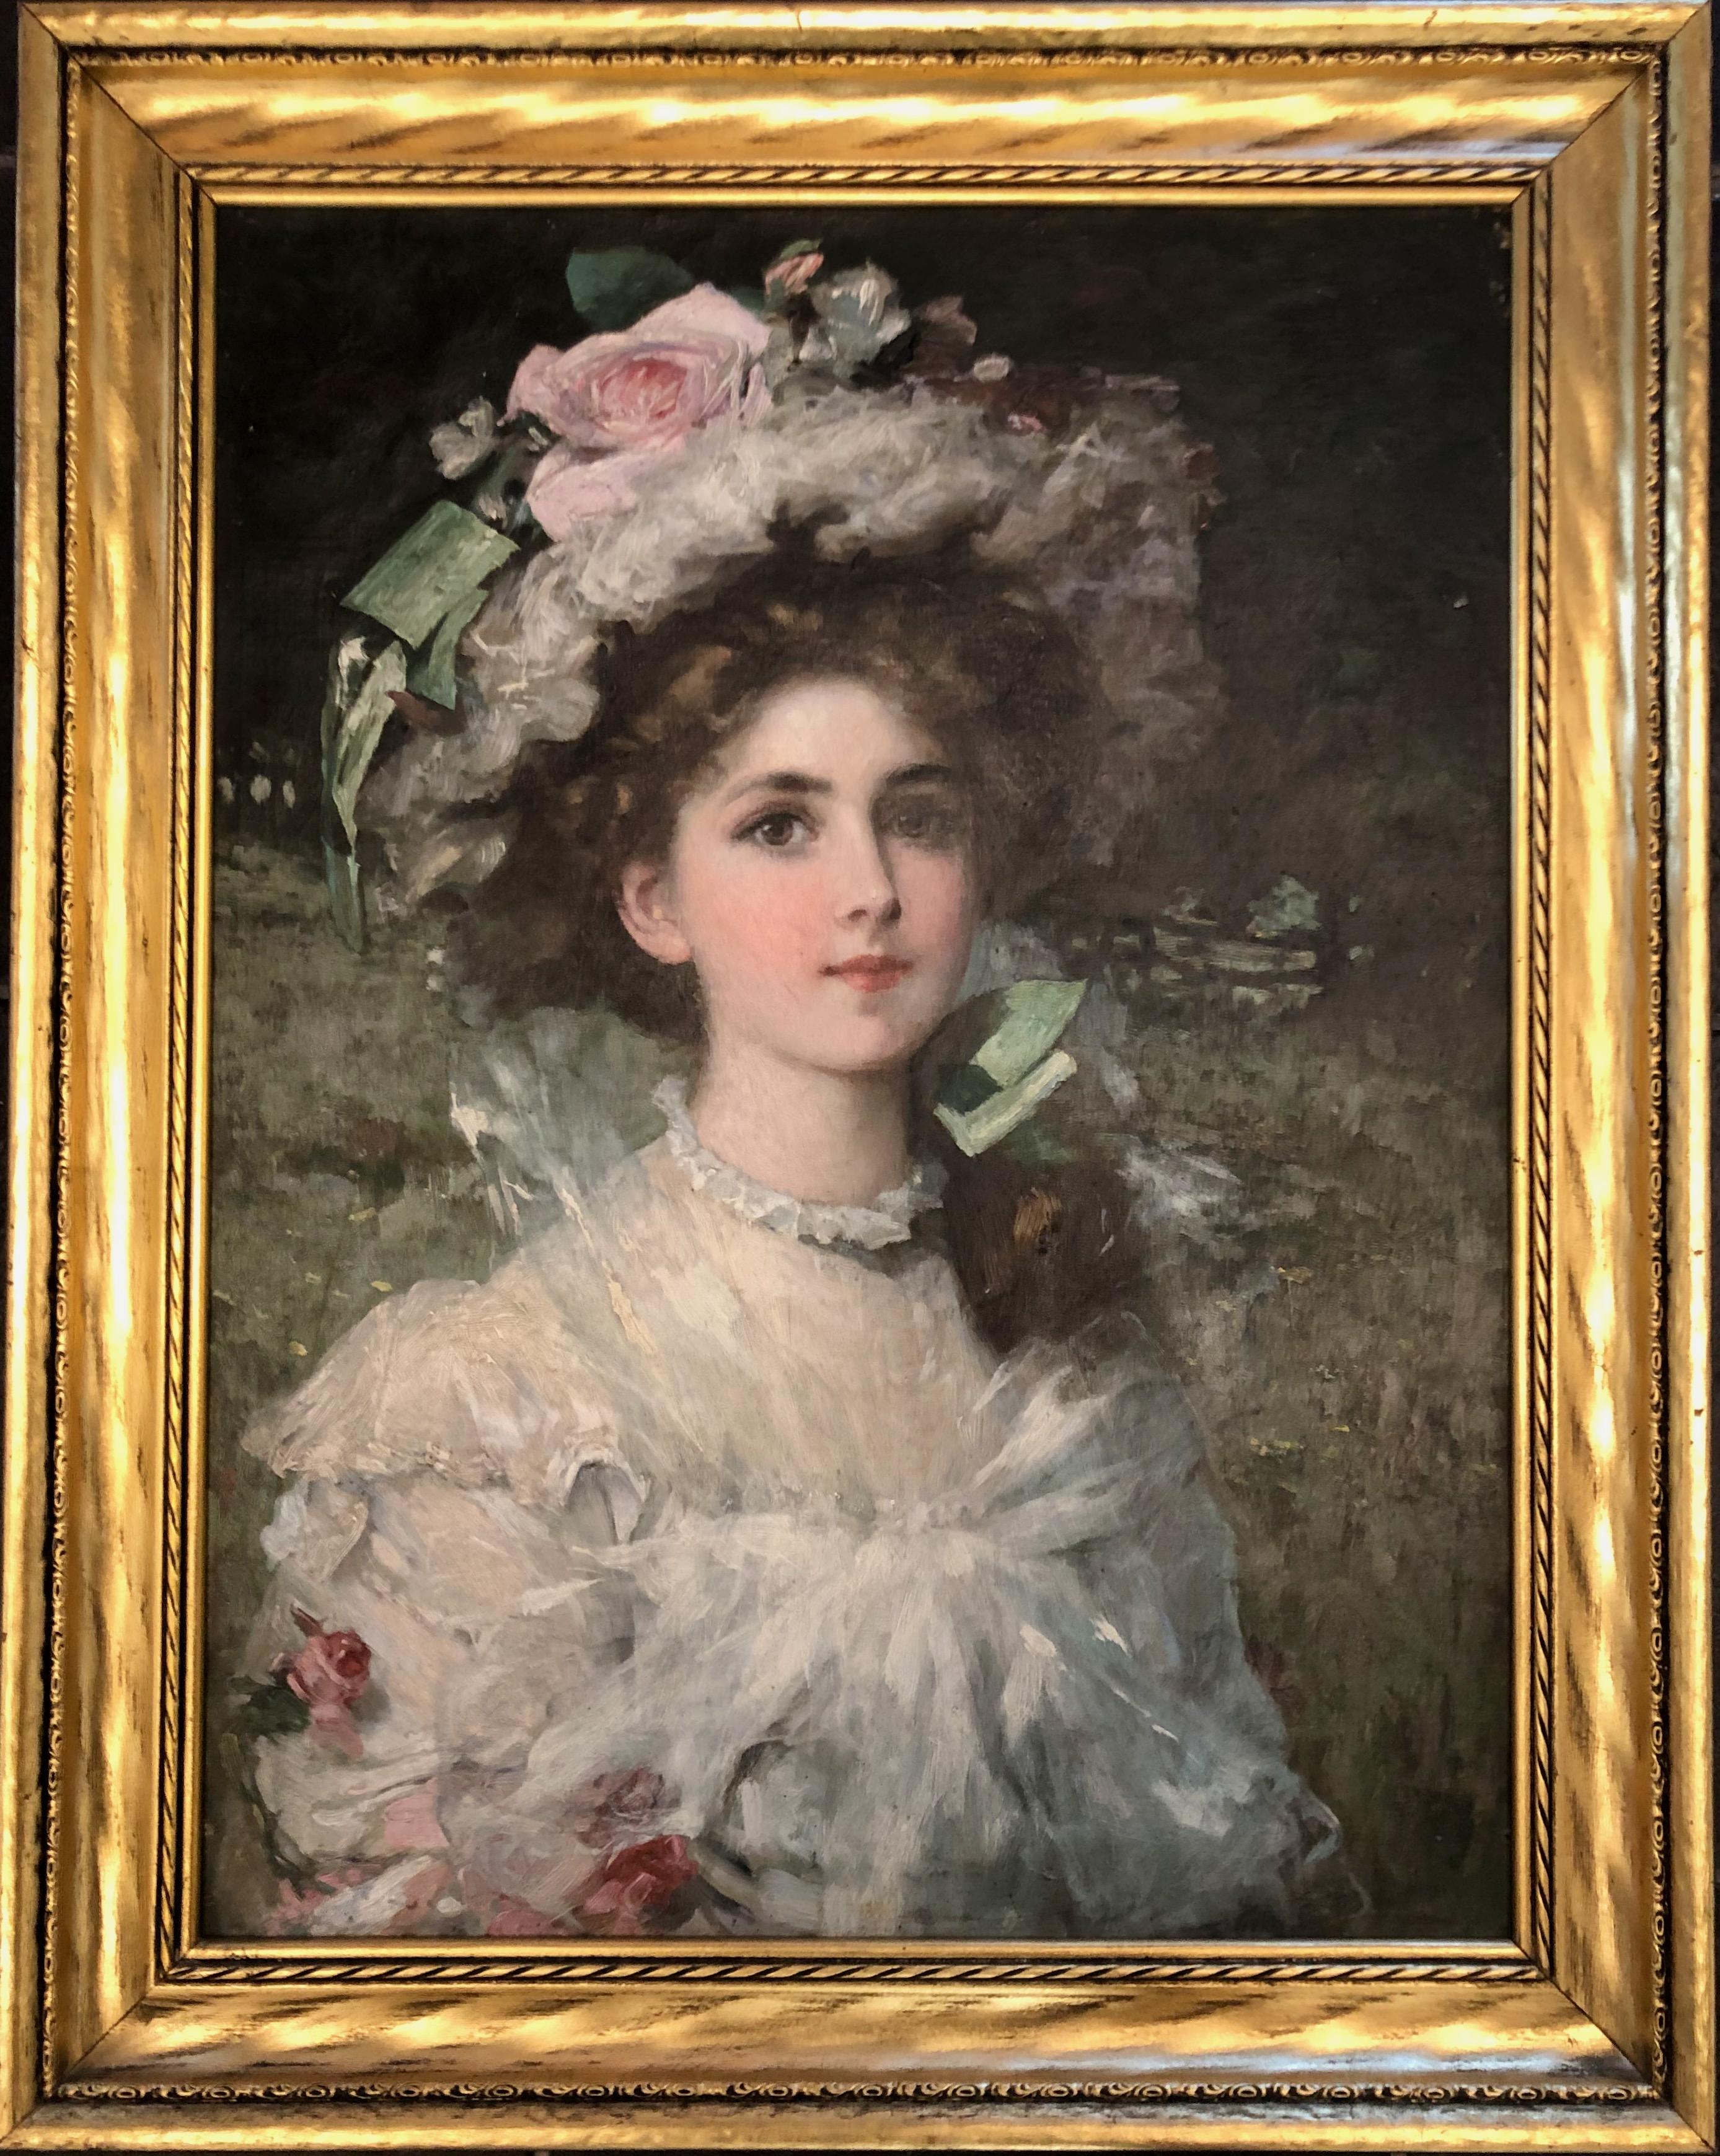  Jeune femme élégante dans le paysage.
Portrait représentant une belle jeune femme dans un paysage vêtue d'une robe de tulle et d'un chapeau orné de roses roses.
Le tableau est en très bon état d'origine, signé dans le coin supérieur gauche.
Artiste